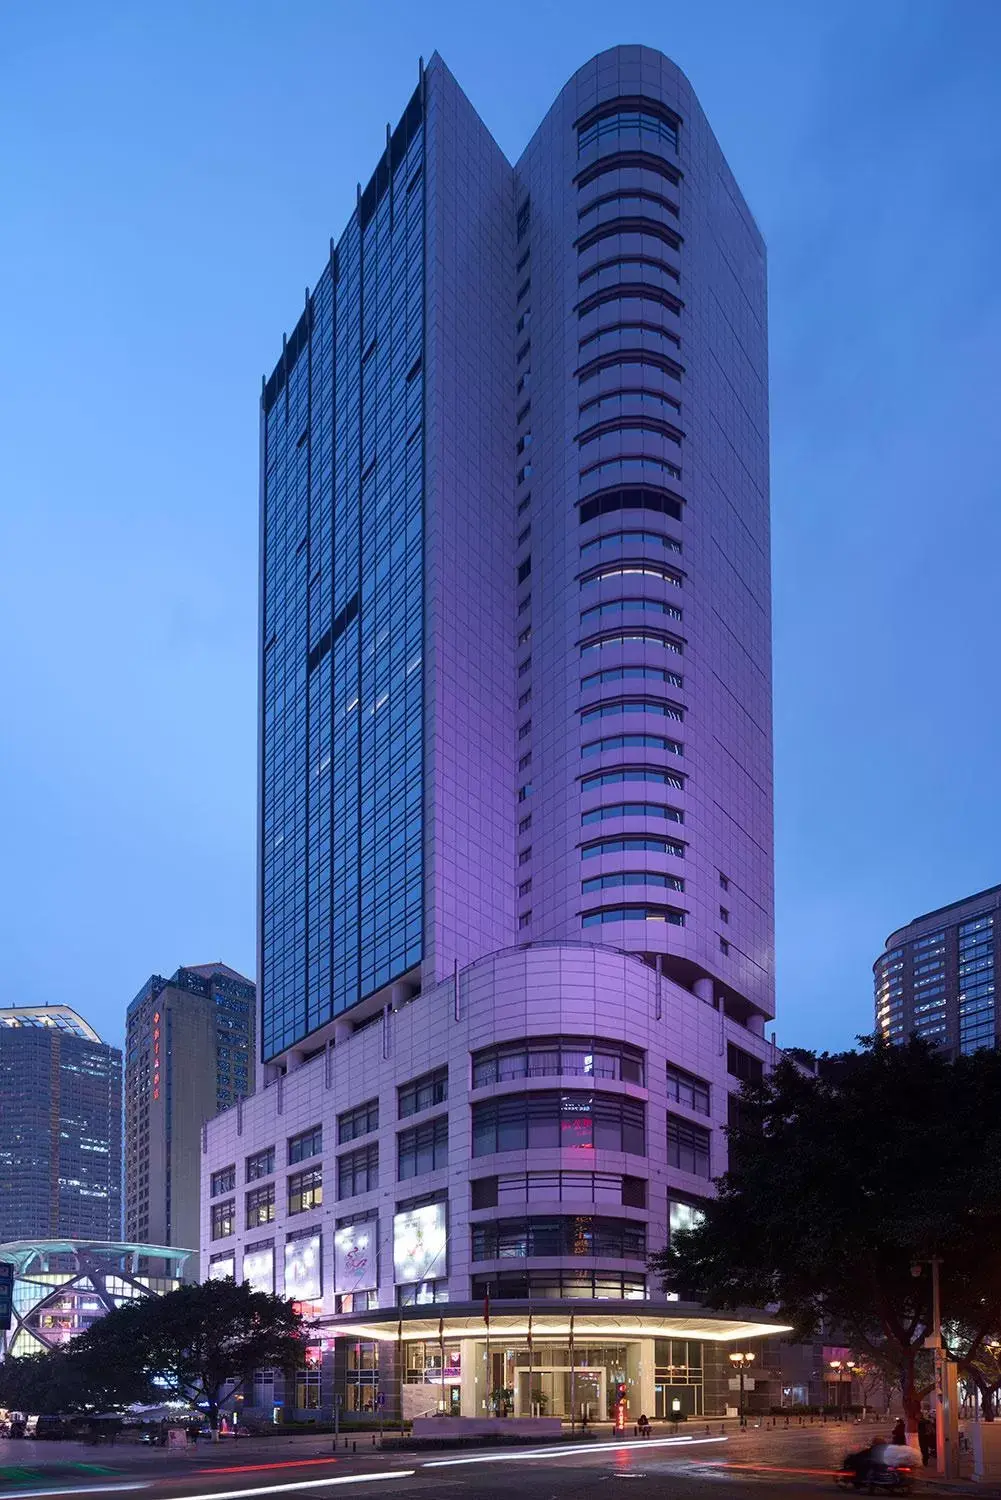 Off site, Property Building in Hyatt Regency Metropolitan Chongqing